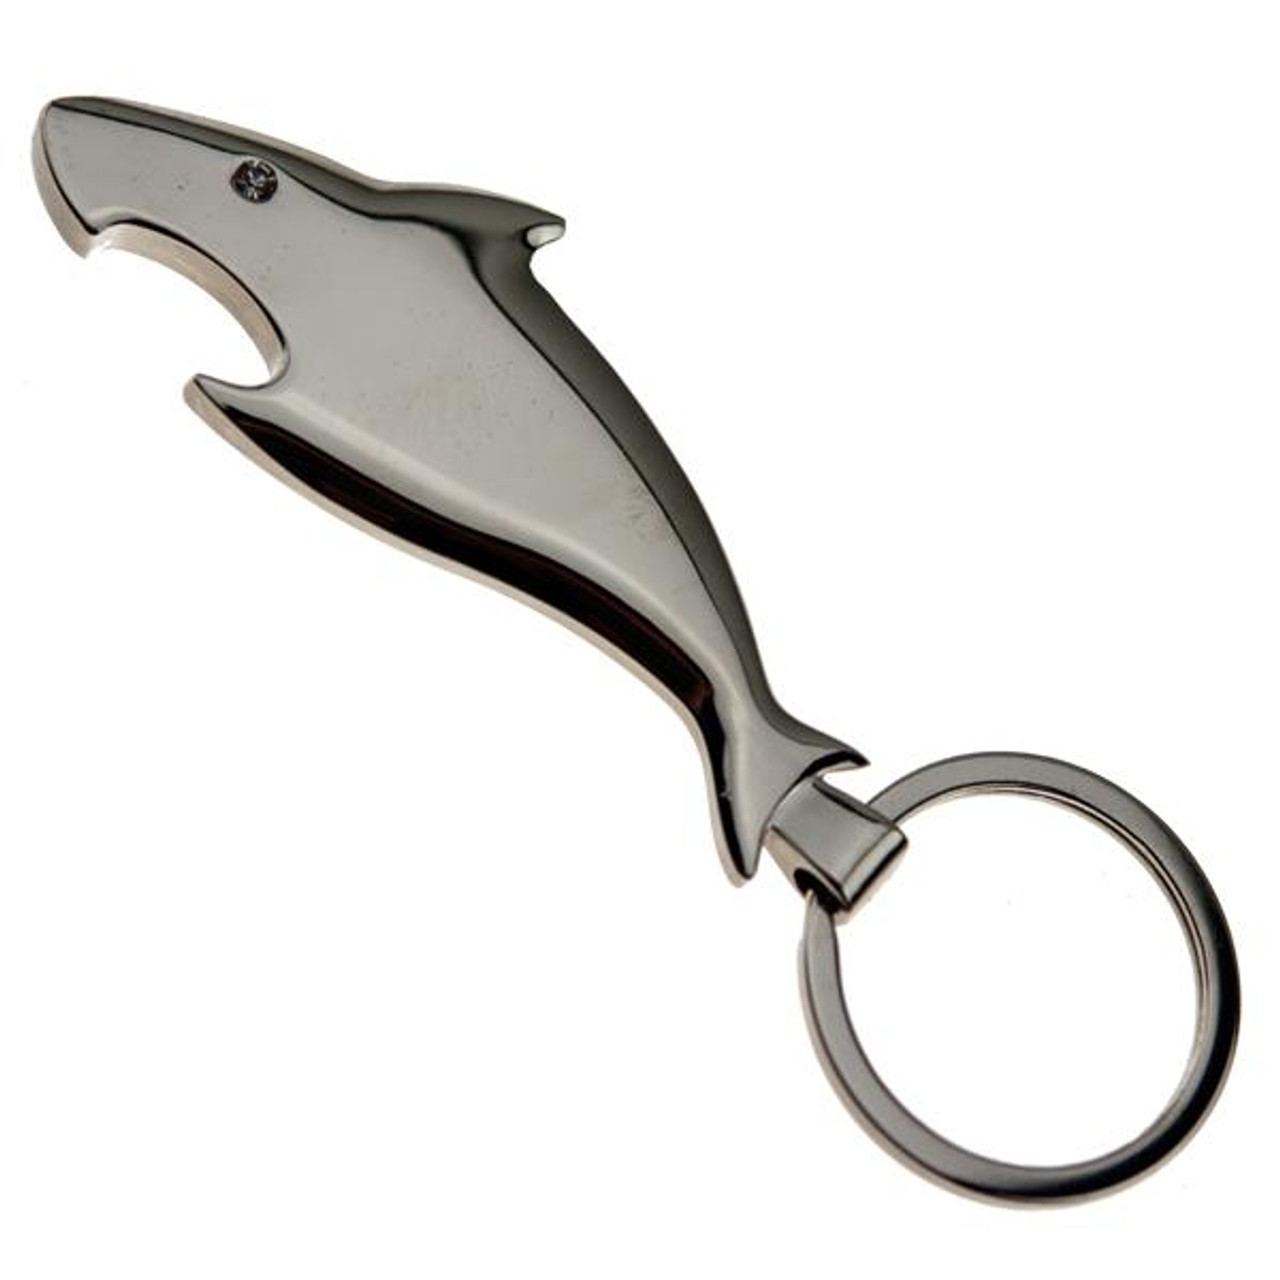 Shop for and Buy Bottle Opener Keychain Shark Shape - Bulk Pack at